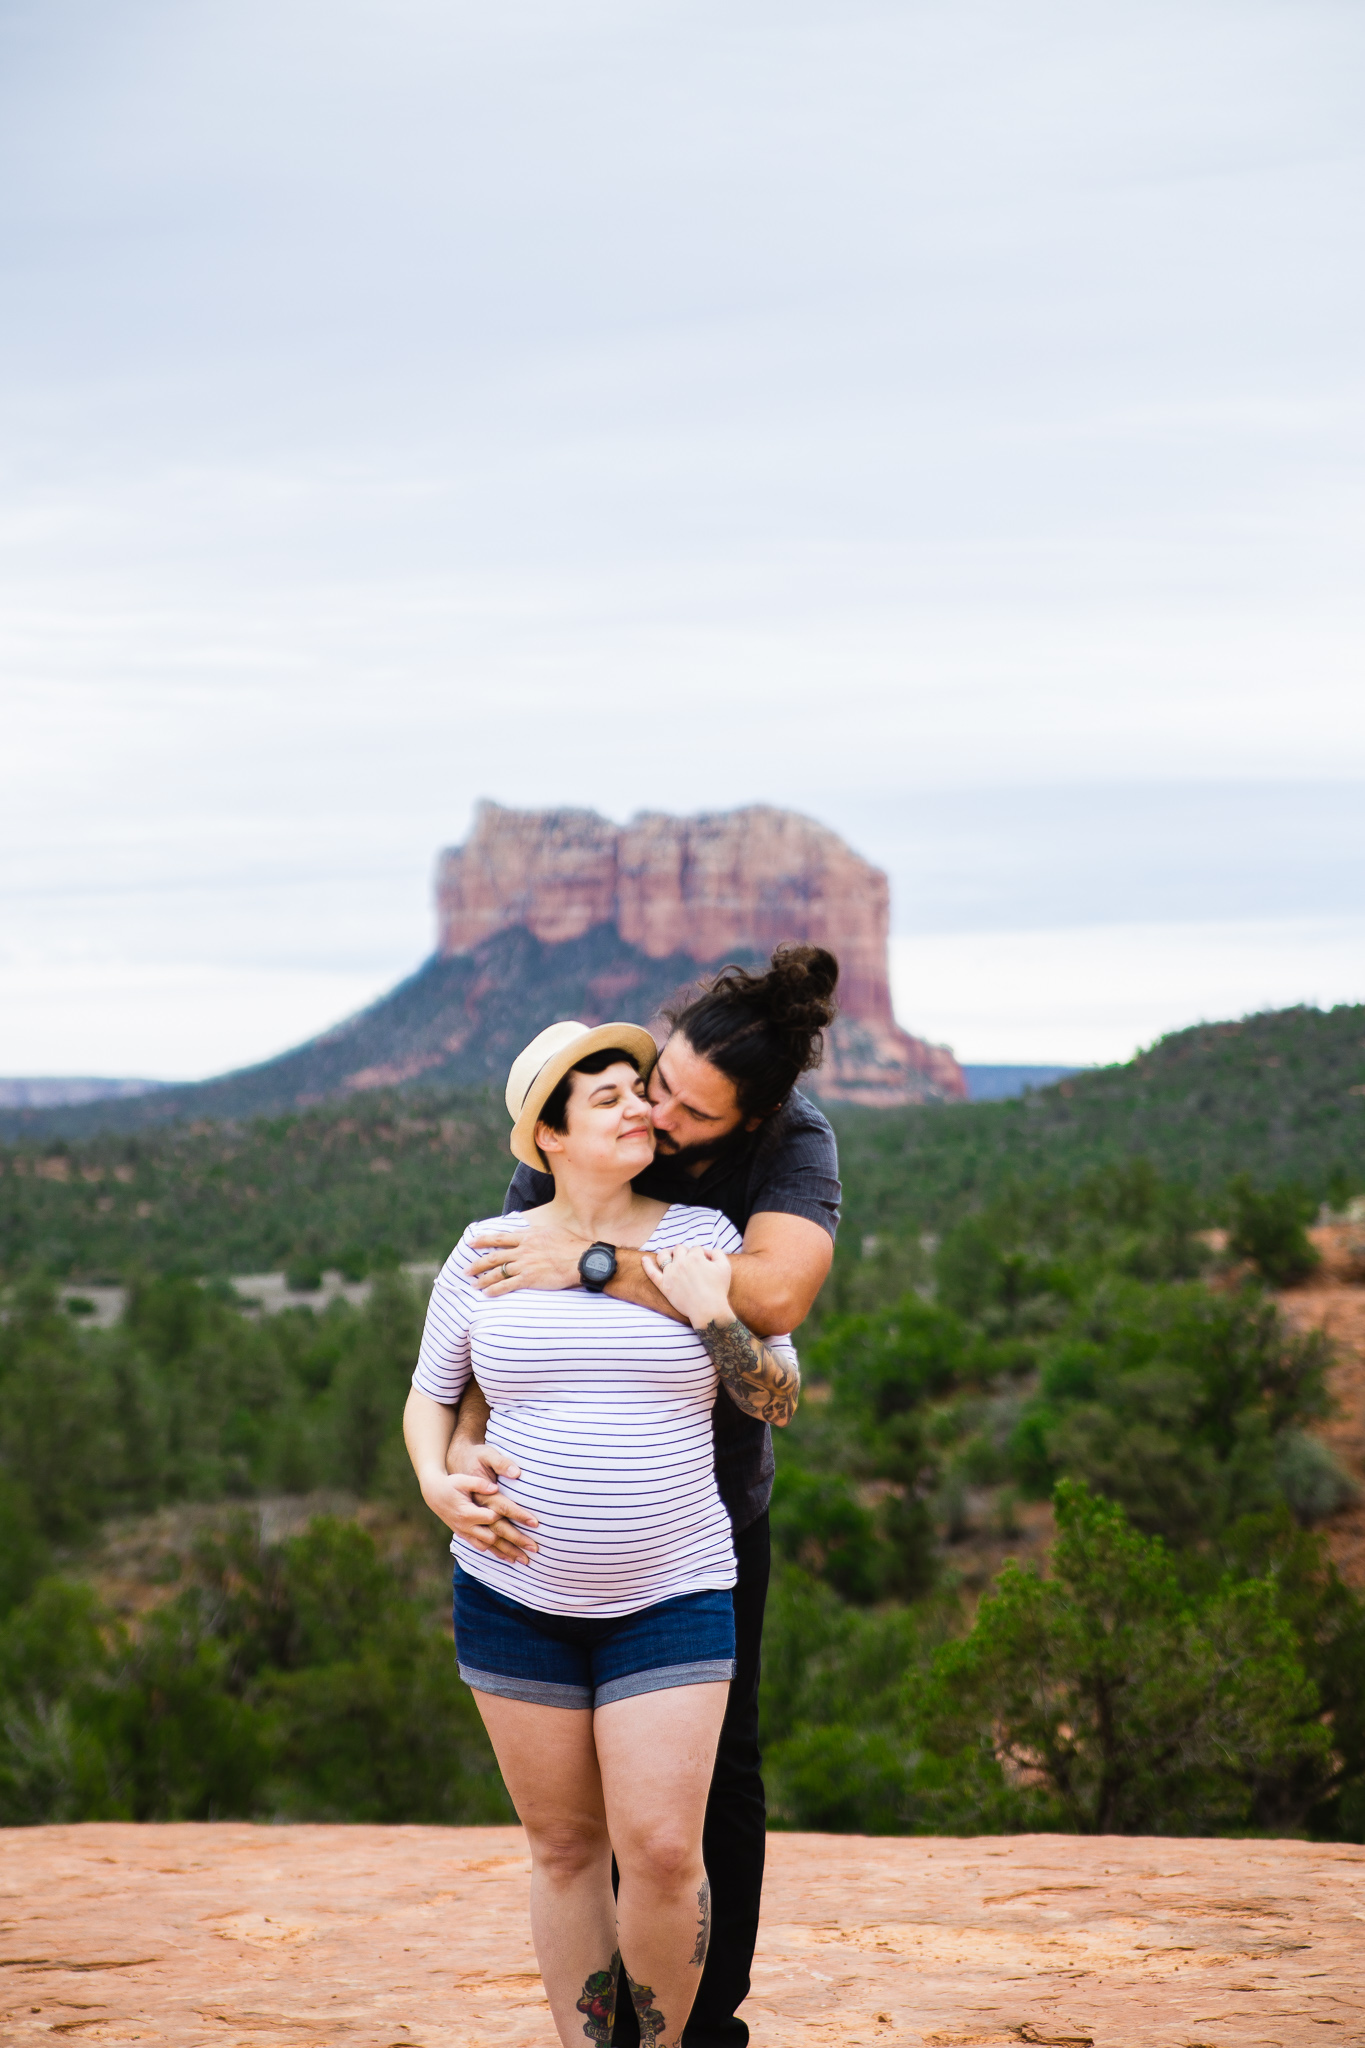 DIY Maternity Session in Sedona, Arizona by PMA Photography.